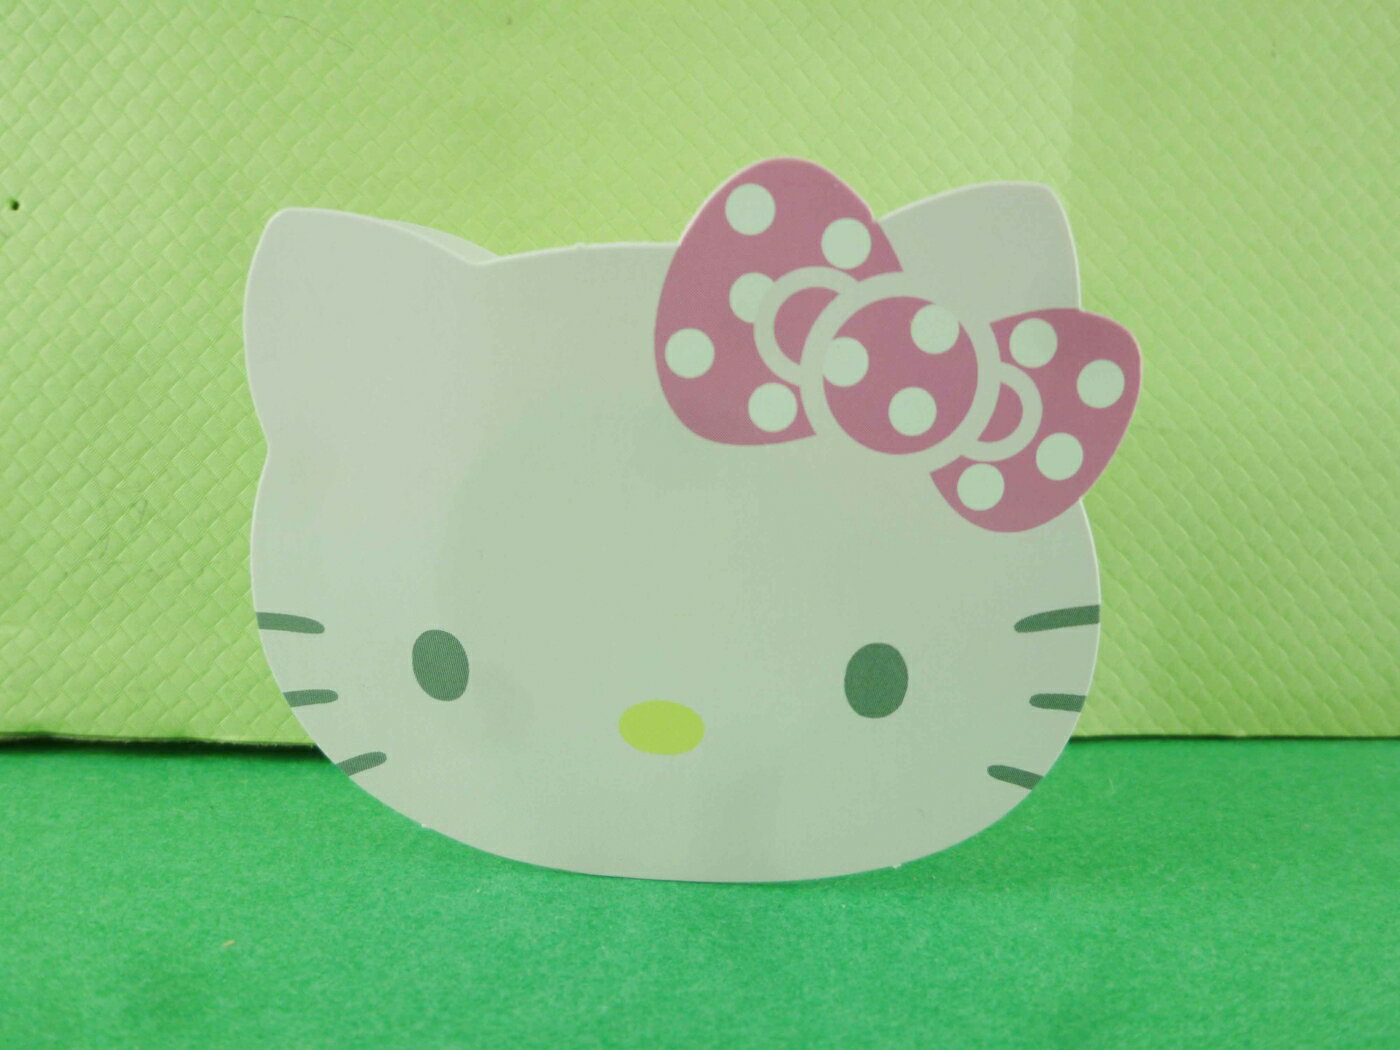 【震撼精品百貨】Hello Kitty 凱蒂貓 滾輪貼紙-粉色大頭 震撼日式精品百貨